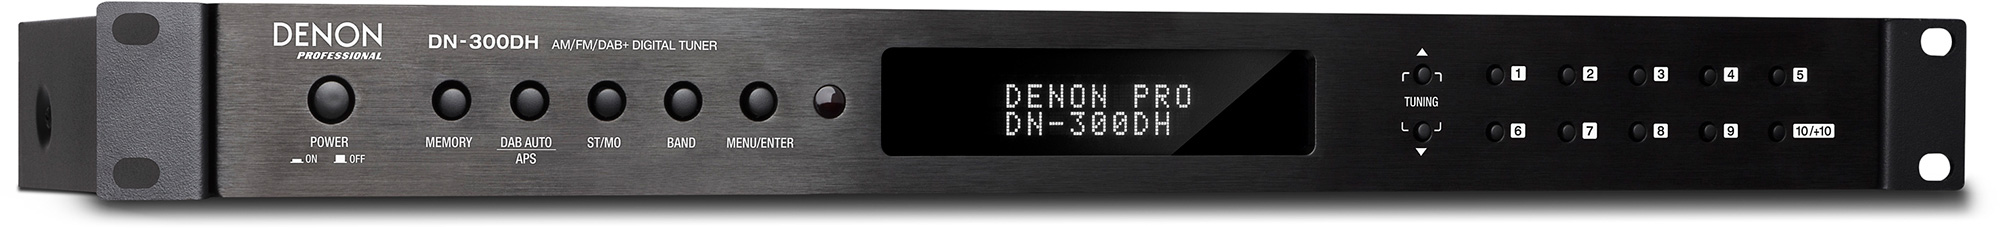 Denon DN-300DH AM / FM / DAB+ Digital Tuner DN-300DH